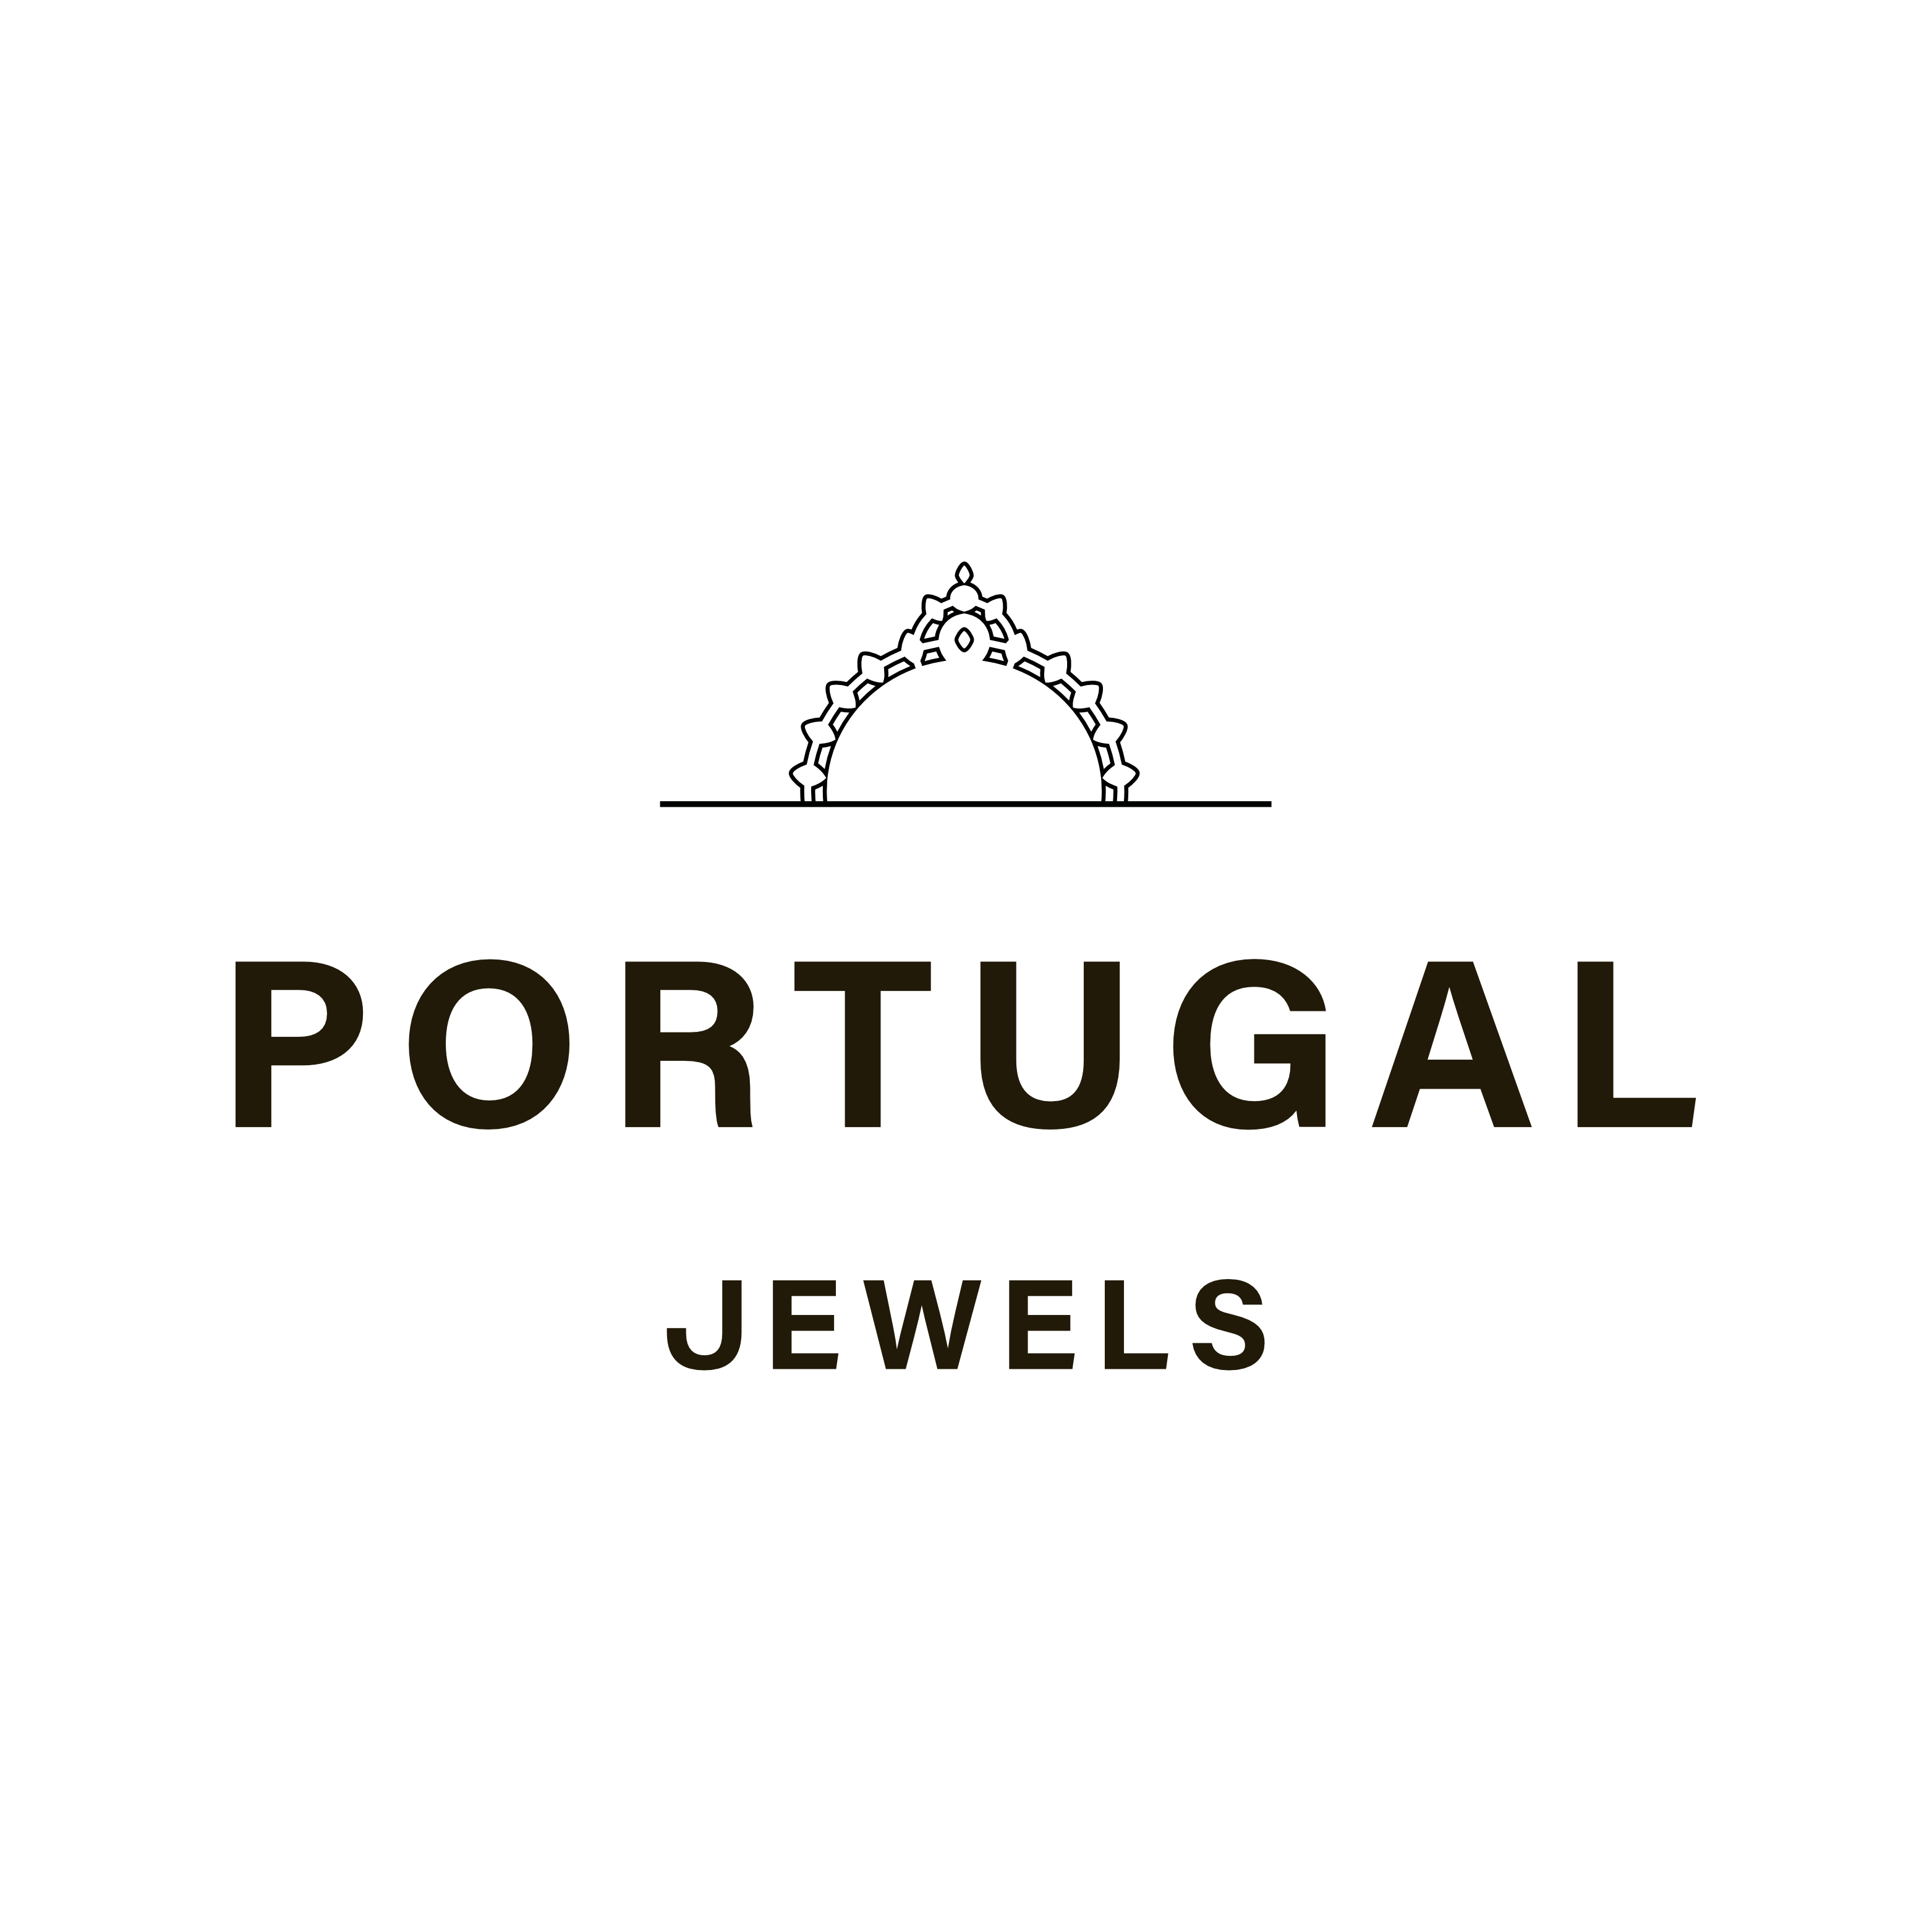 Portugal Jewels - logo quadrado preto - com fundo branco